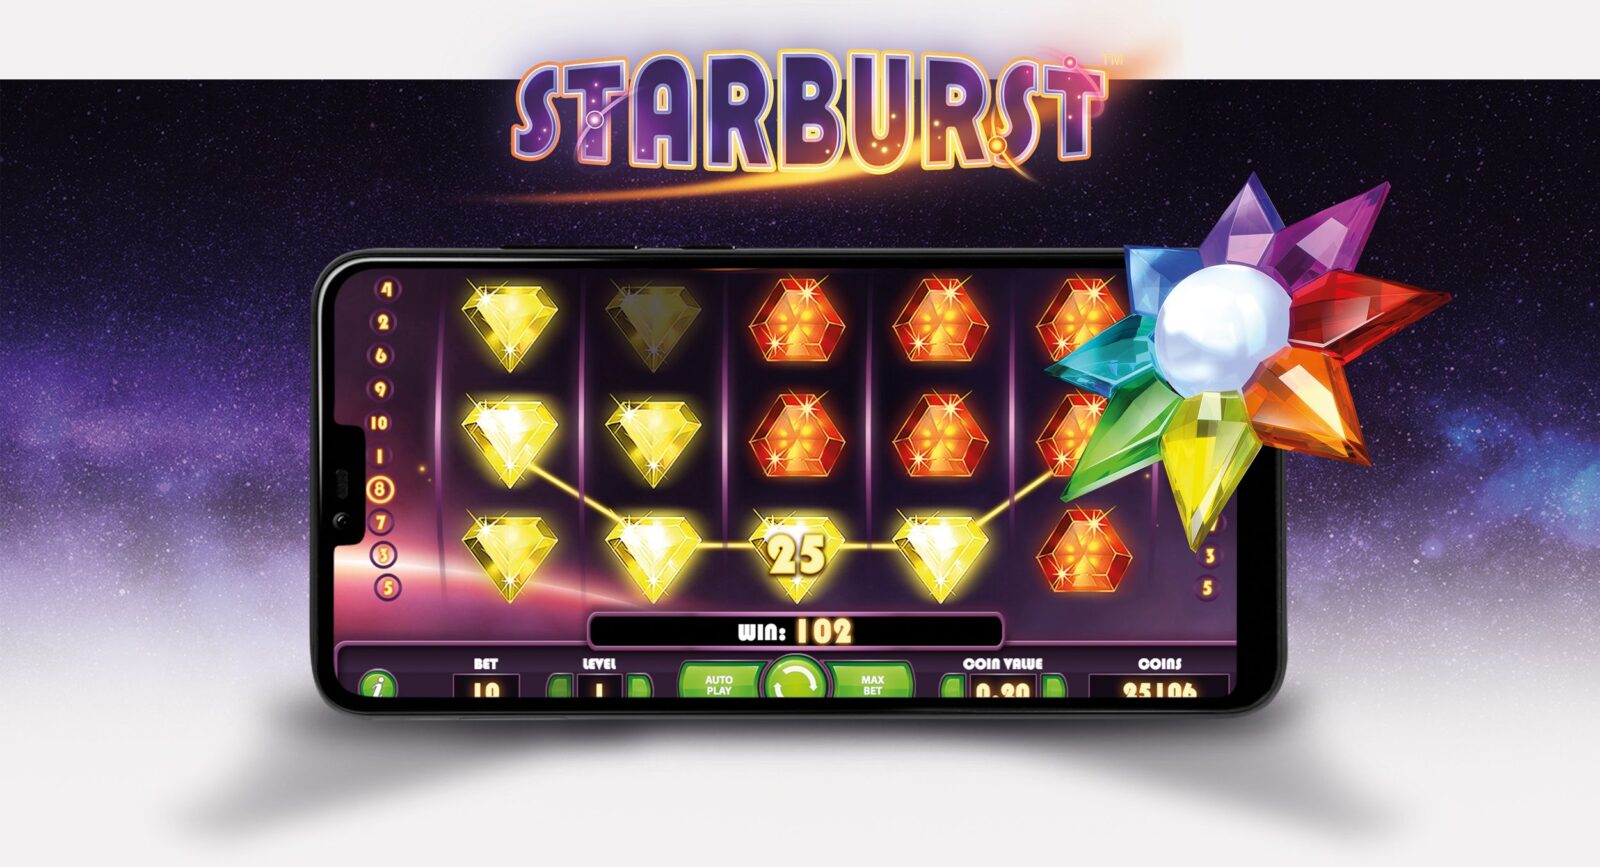 Starburst - The Cosmic Classic